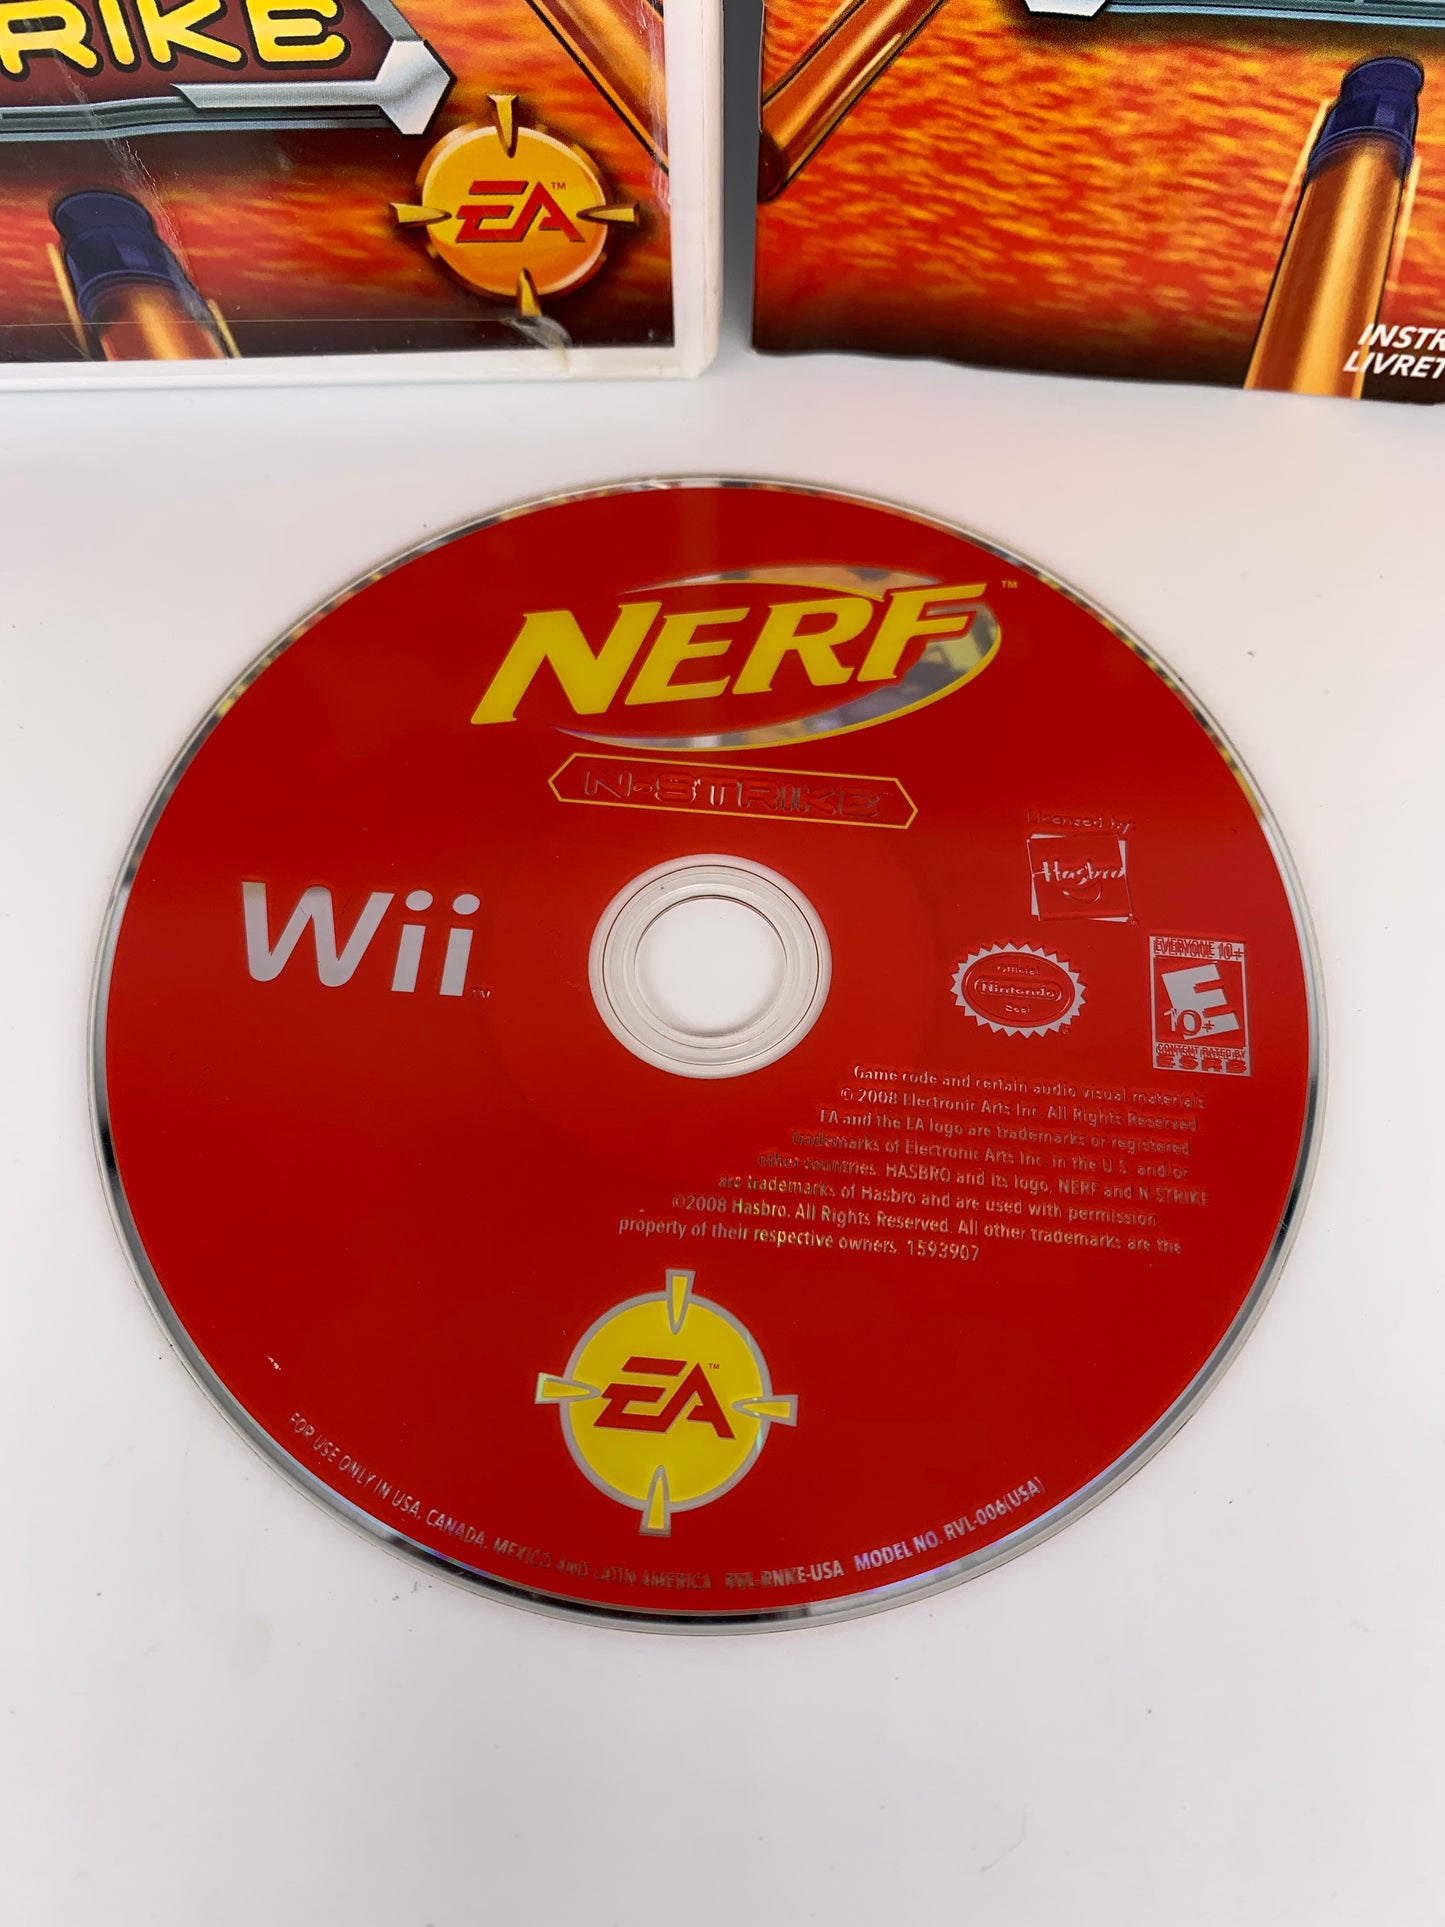 NiNTENDO Wii | NERF N-STRiKE